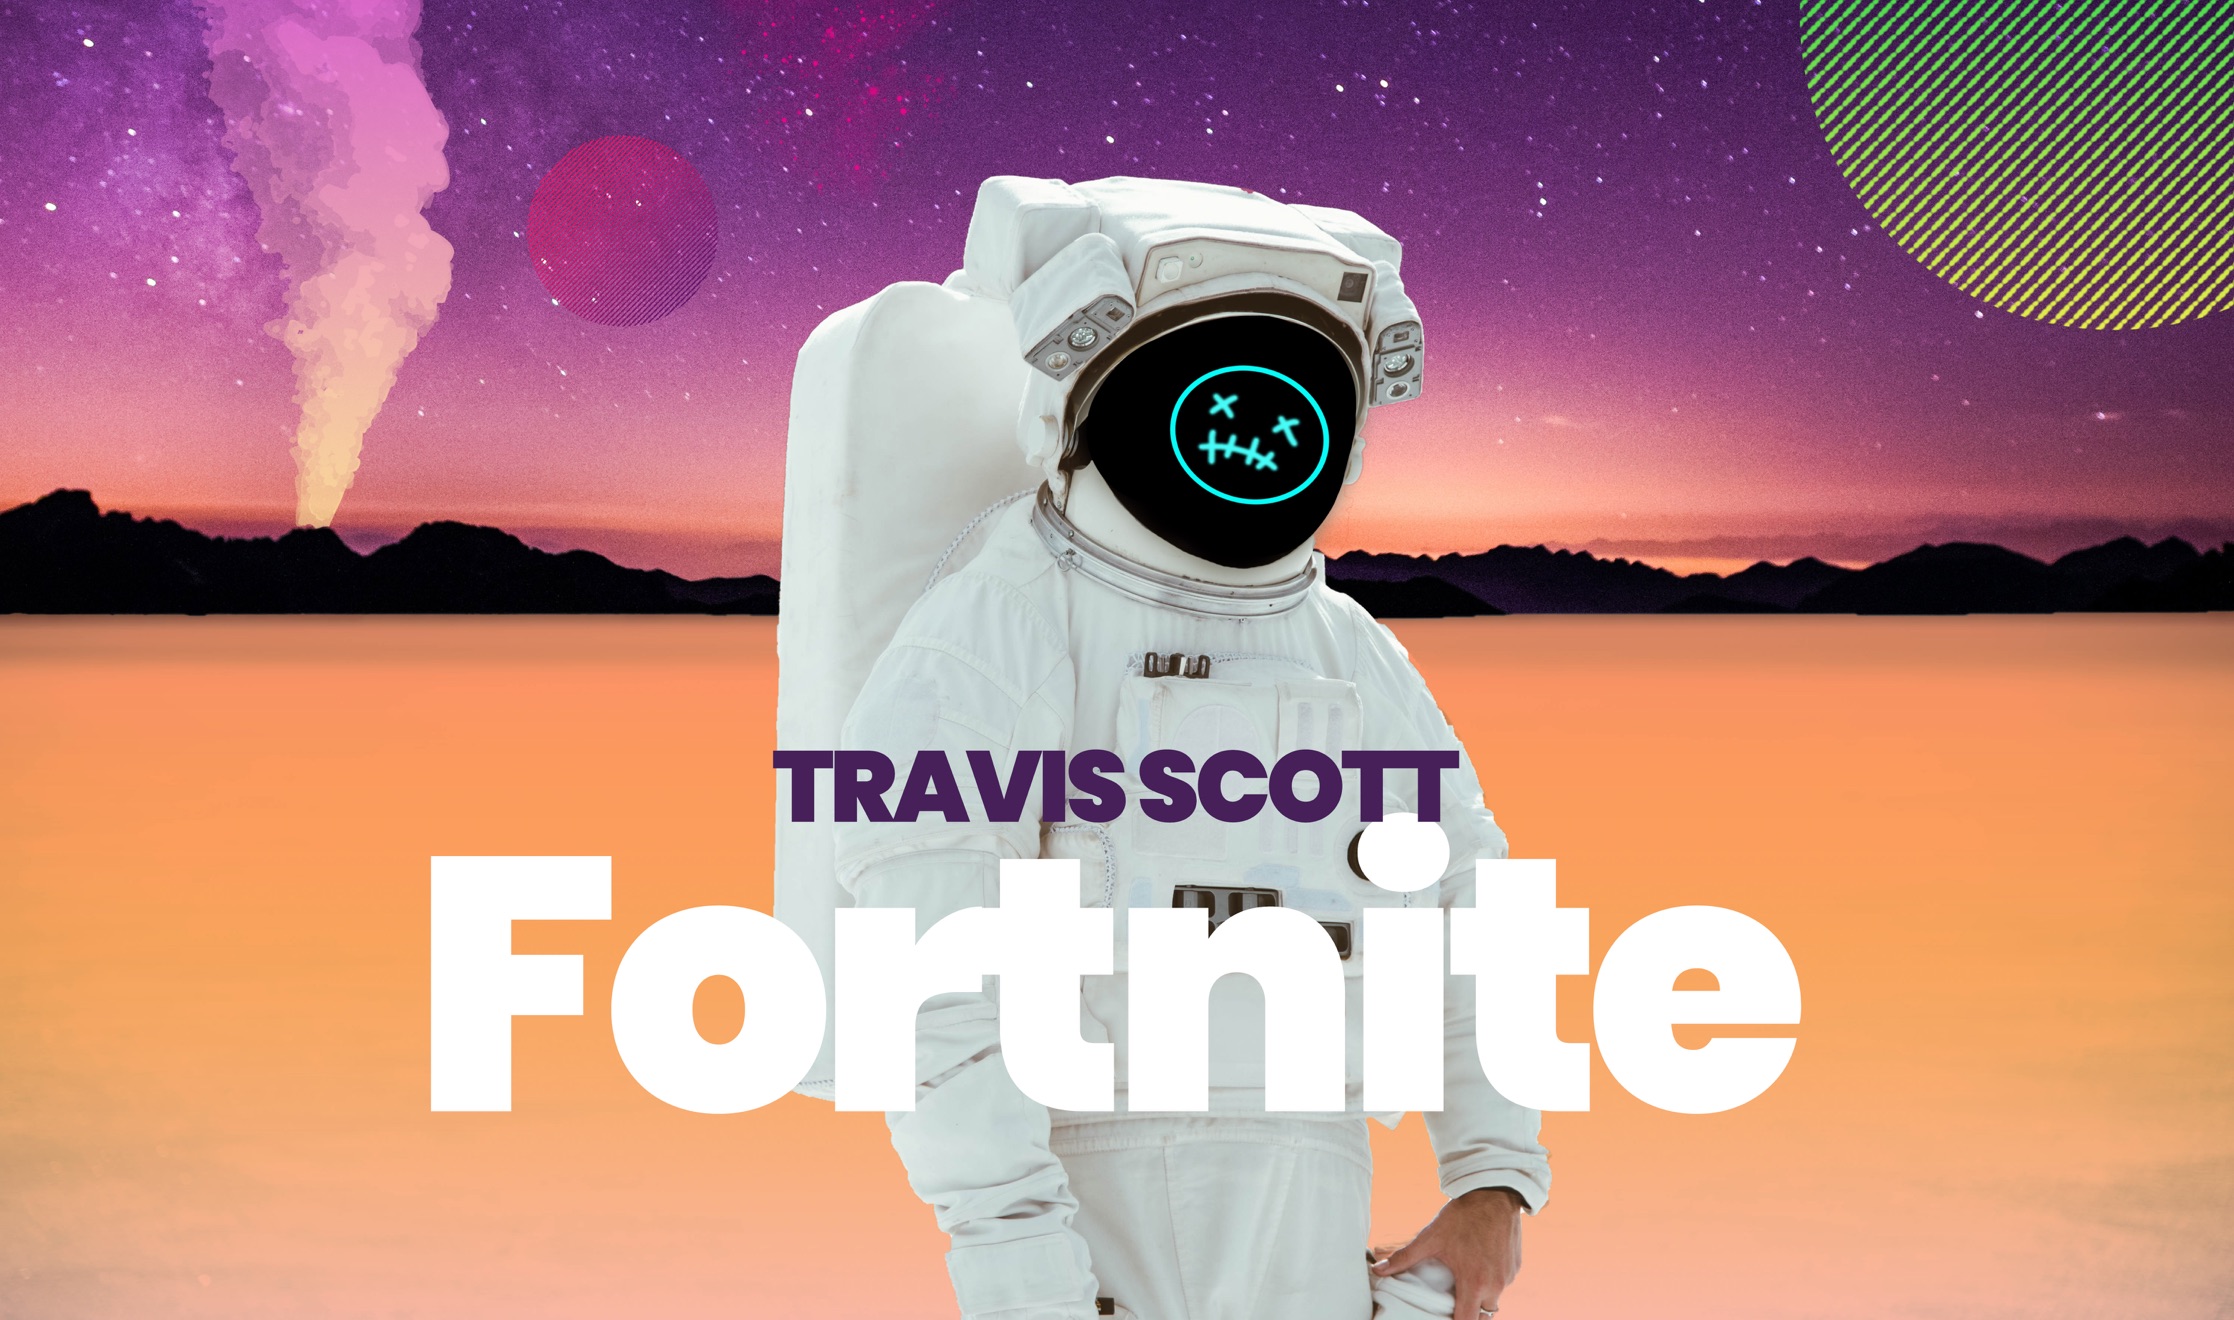 Key Marketing Lessons from Travis Scott’s Fortnite Concert